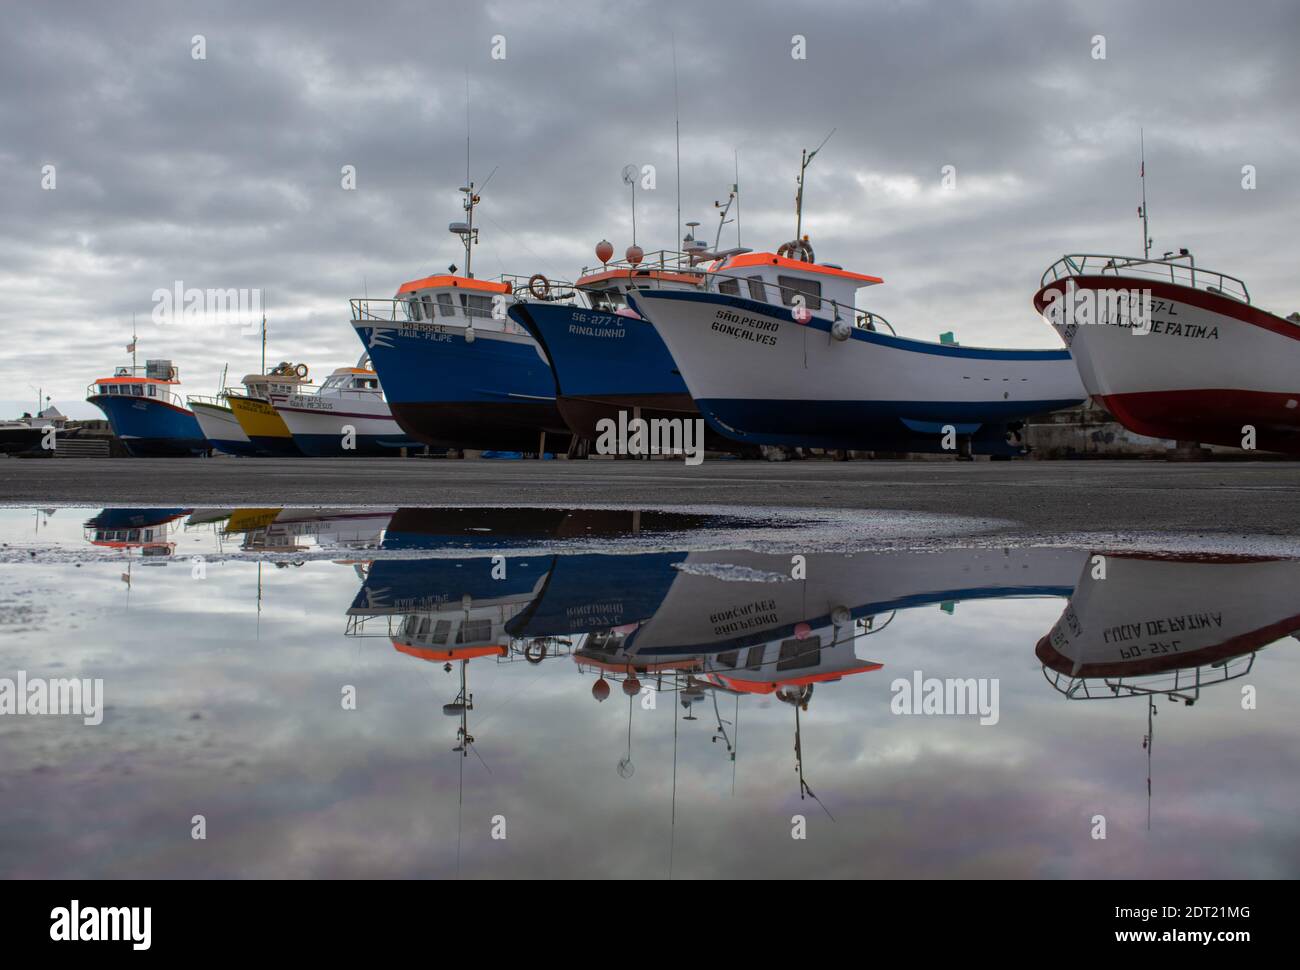 Bateaux de Fisher sur terre, réflexion dans l'eau, Açores. Banque D'Images